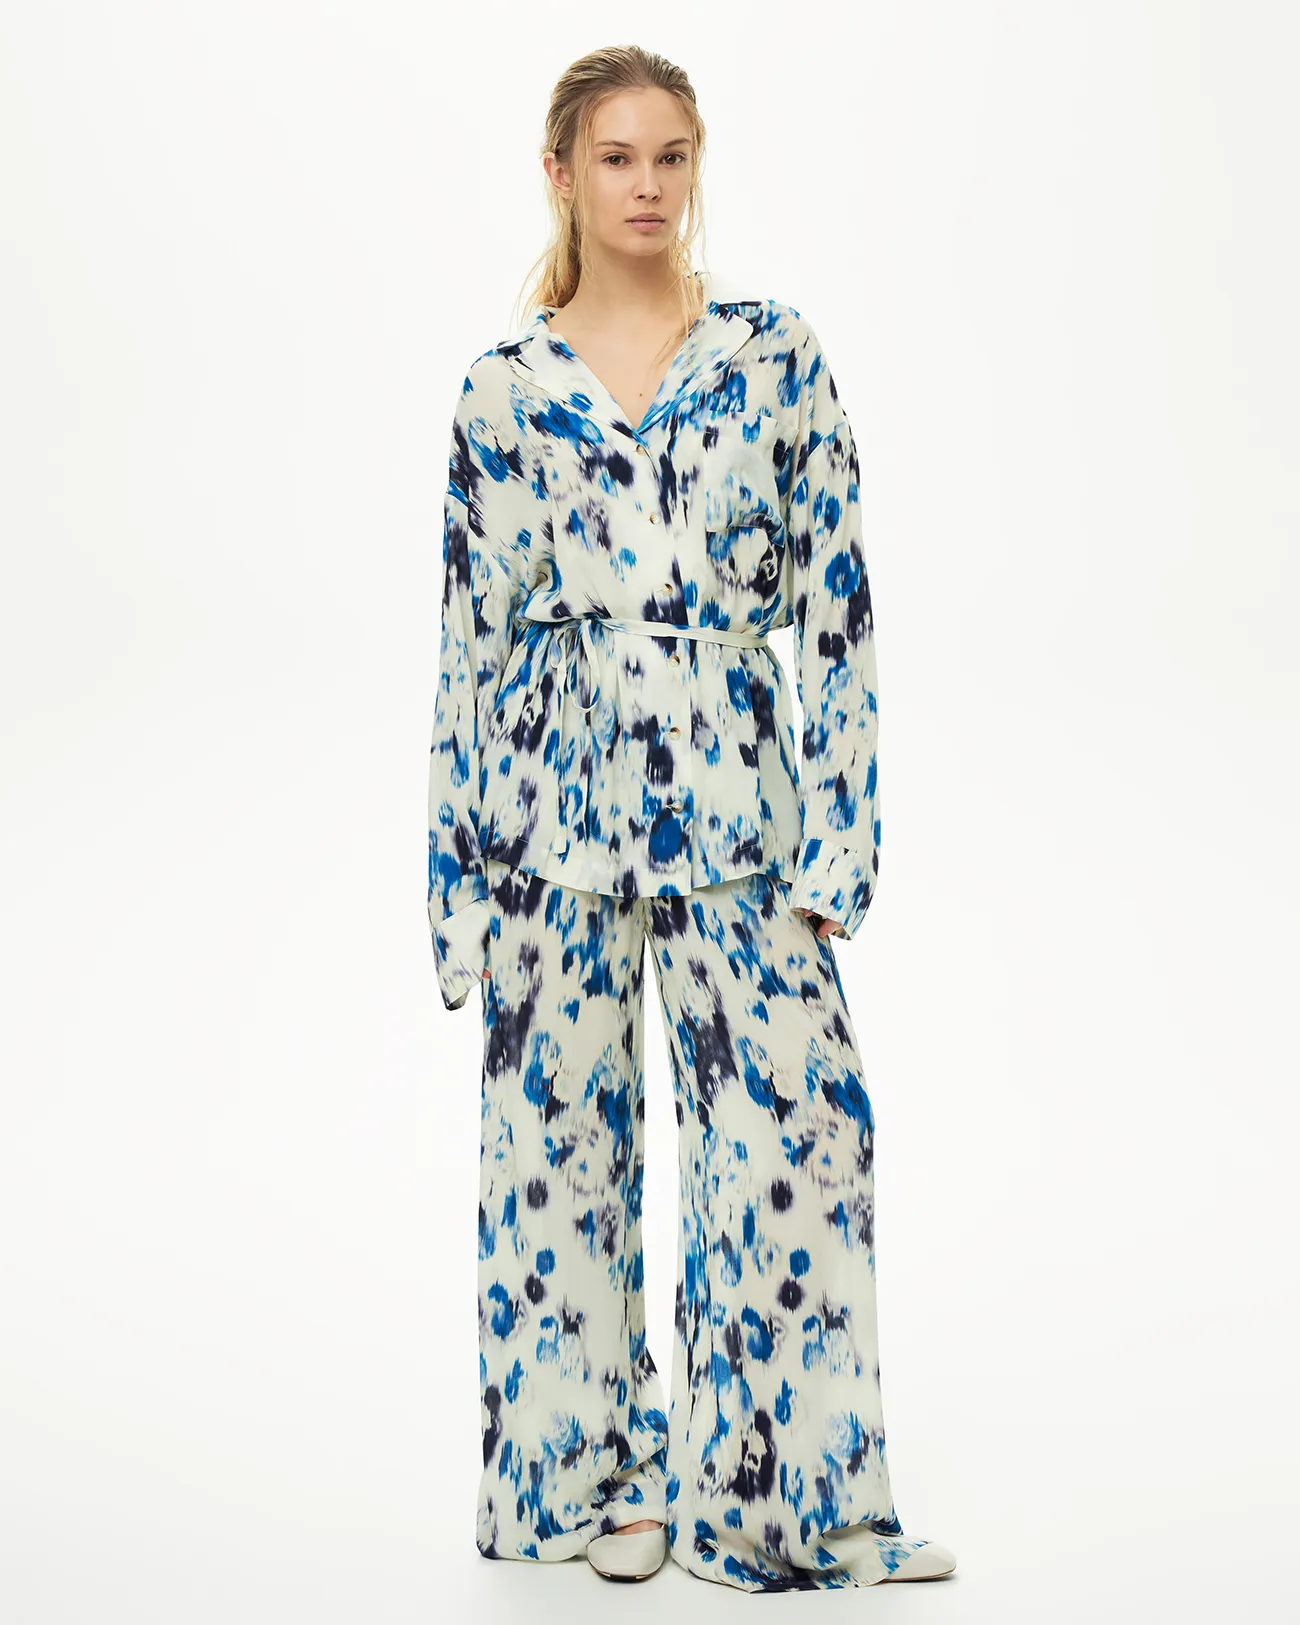 Комплект: пижама синего цвета